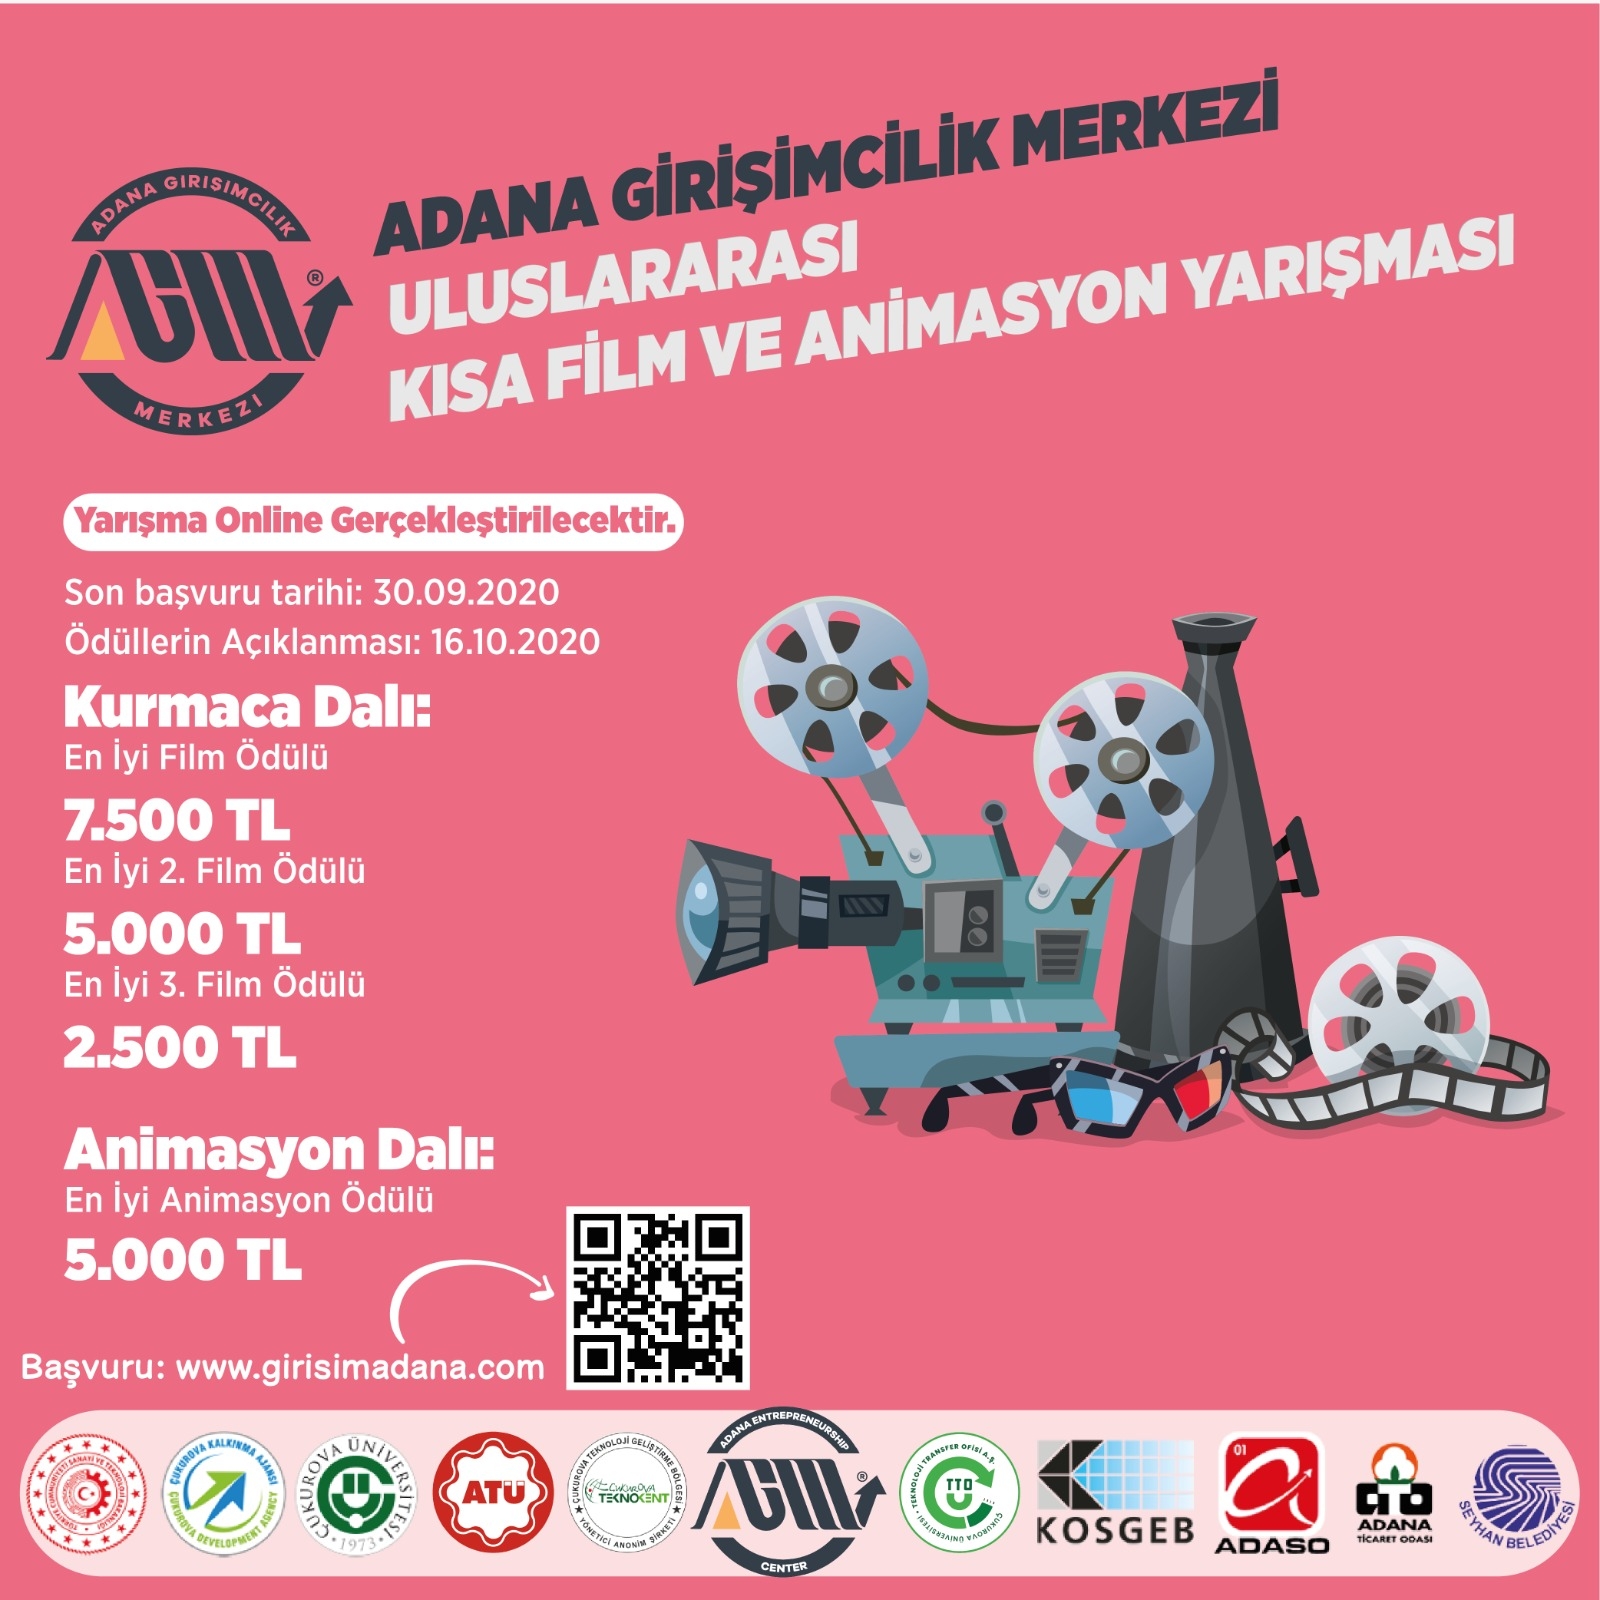 Adana Girişimcilik Merkezi Uluslararası Kısa Film ve Animasyon Yarışması